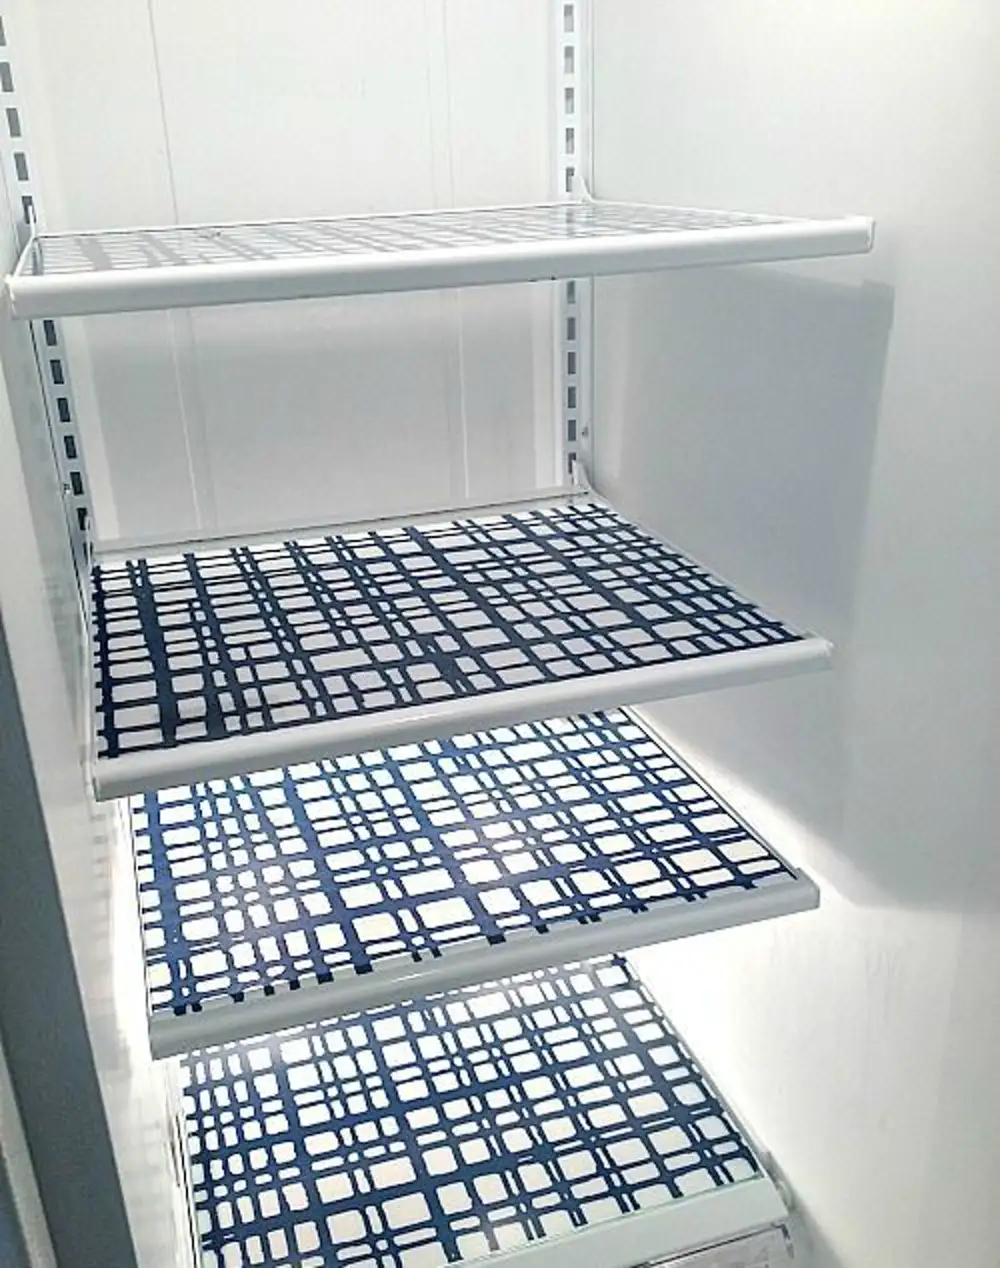 ремонт полок в холодильнике своими руками